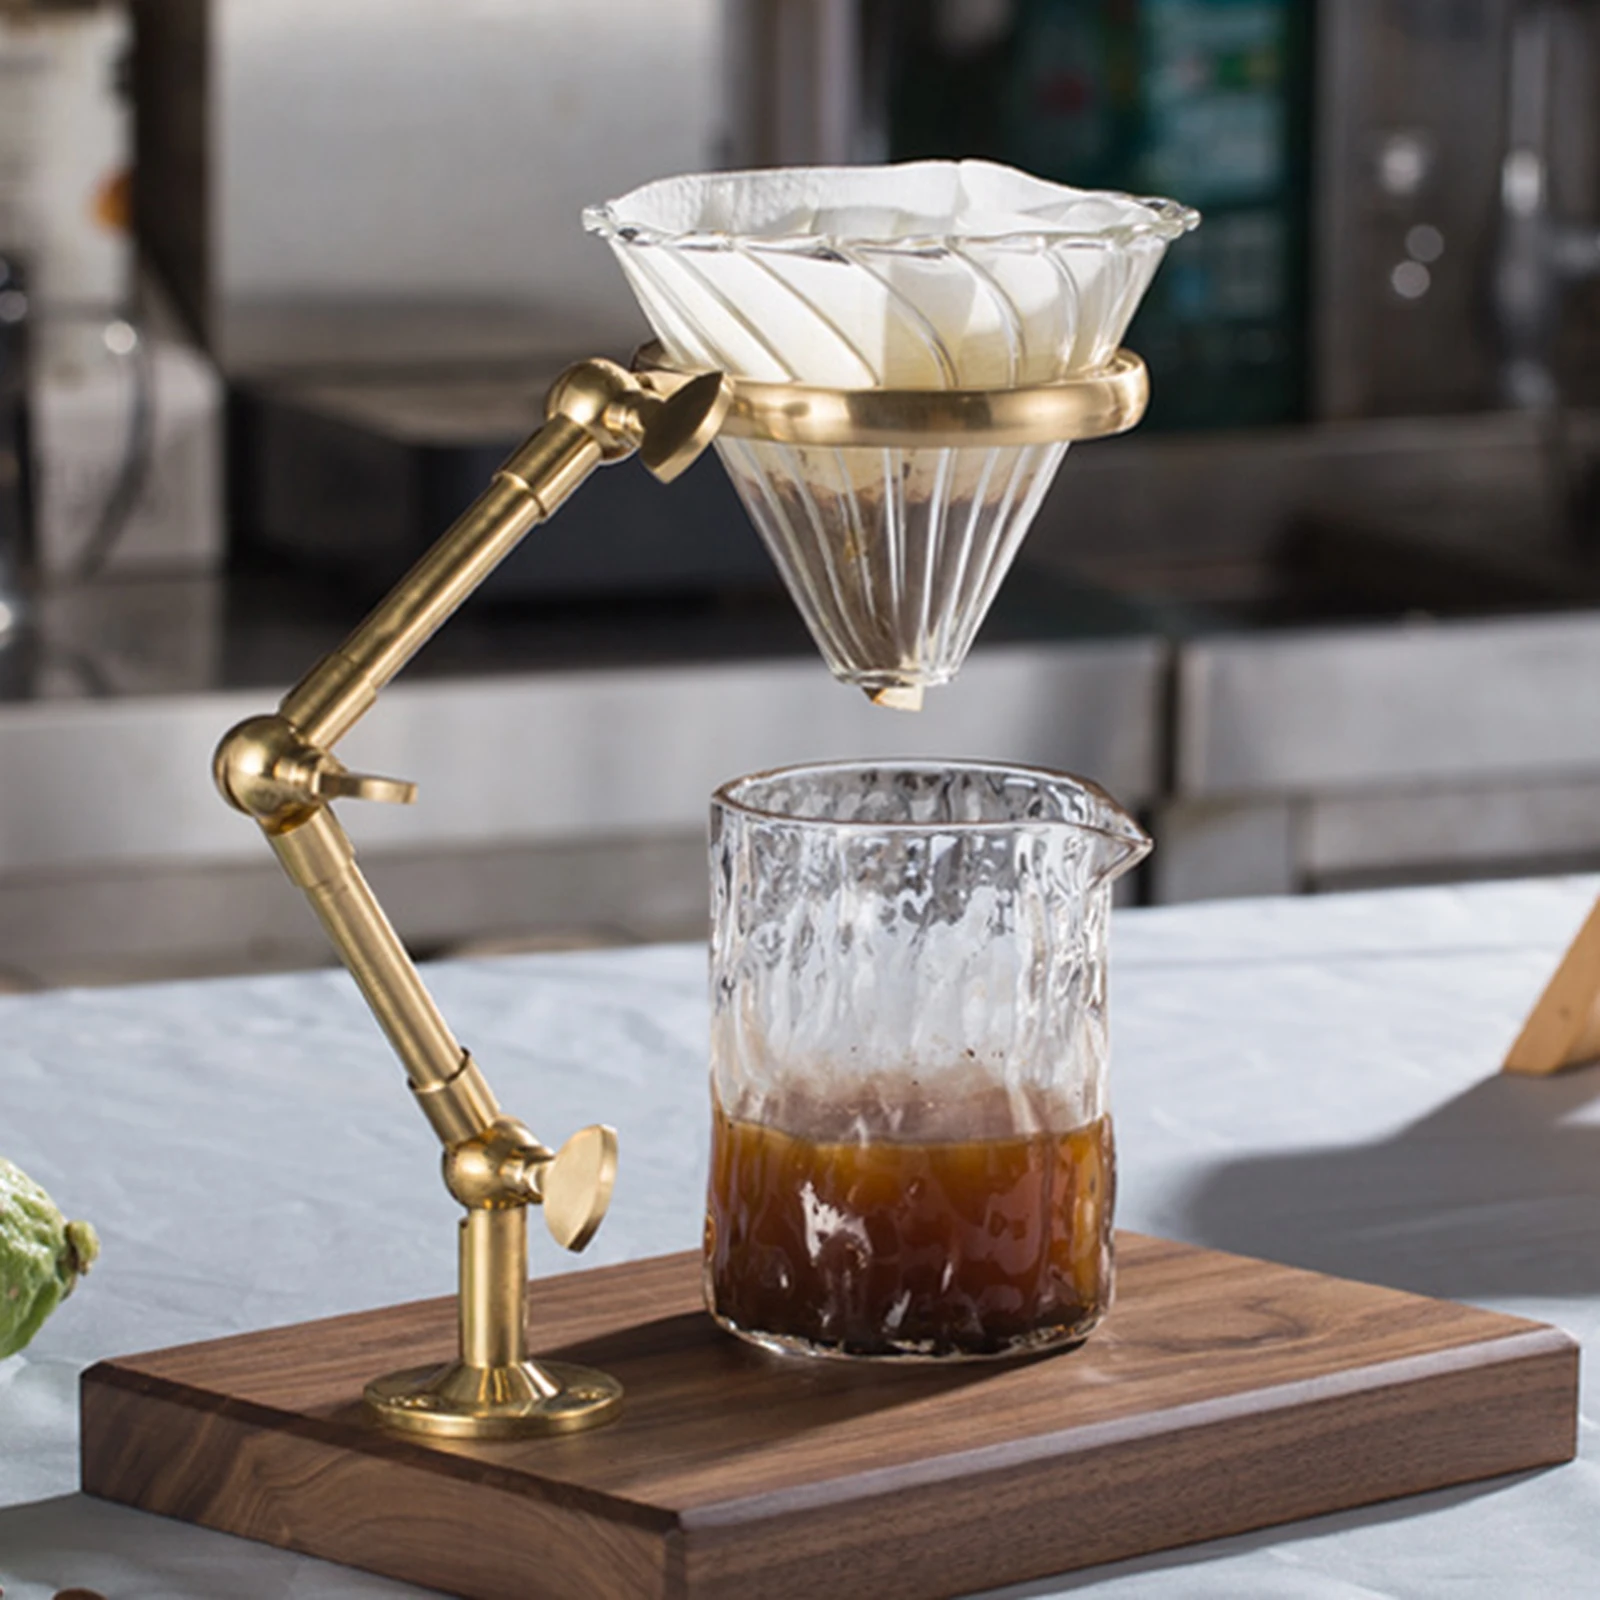 Brass Frame Coffee Rack Filter Cup Holder Tea Filter Drop Bracket Adjustable Height Solid Wood Base